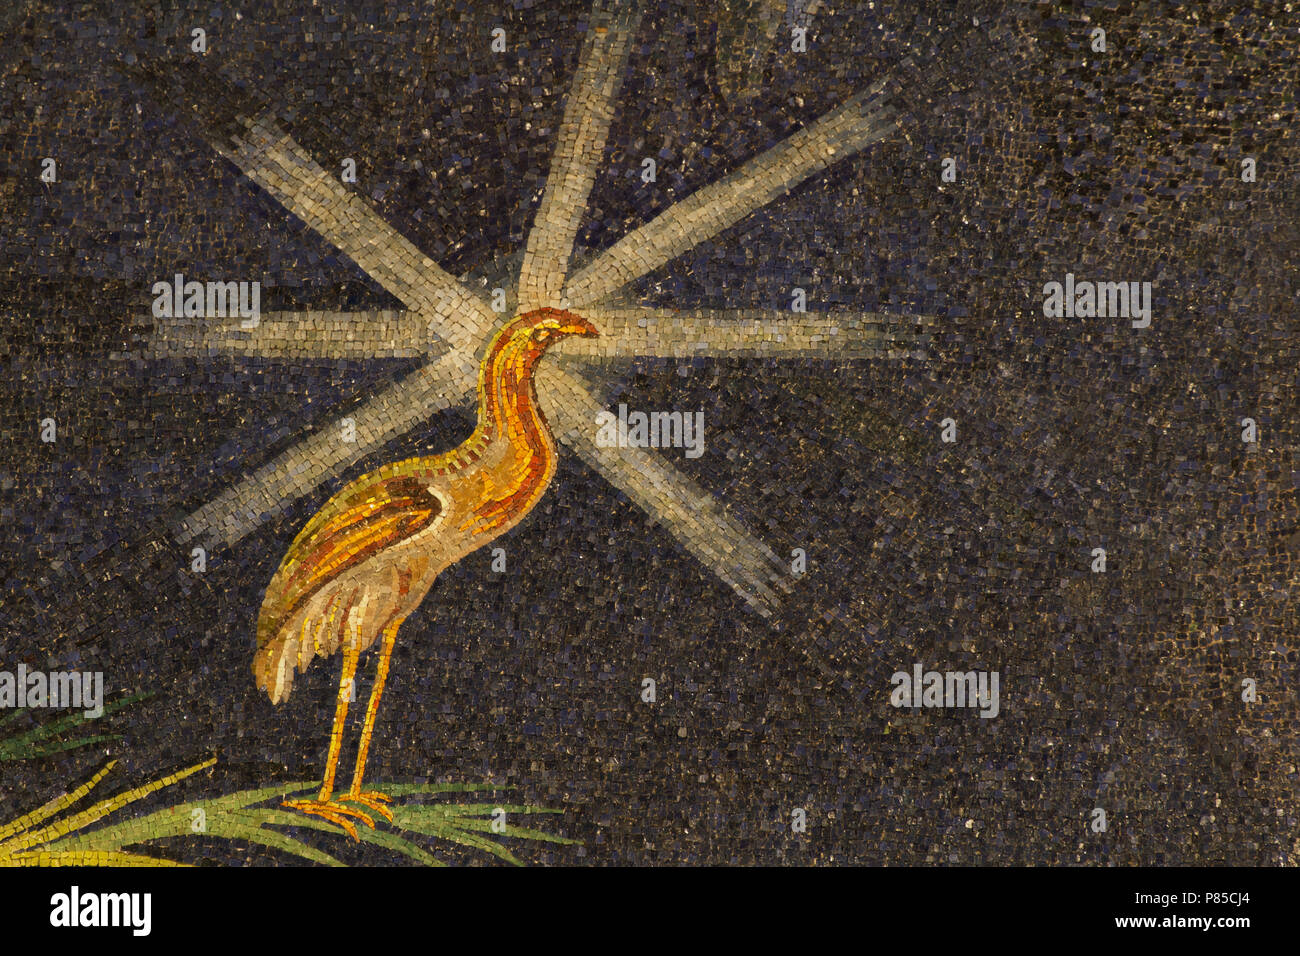 Peacock - dettaglio del sesto secolo mosaico absidale (530 AC) - Capolavoro dell'arte paleocristiana - Basilica dei Santi Cosma e Damiano - Roma Foto Stock